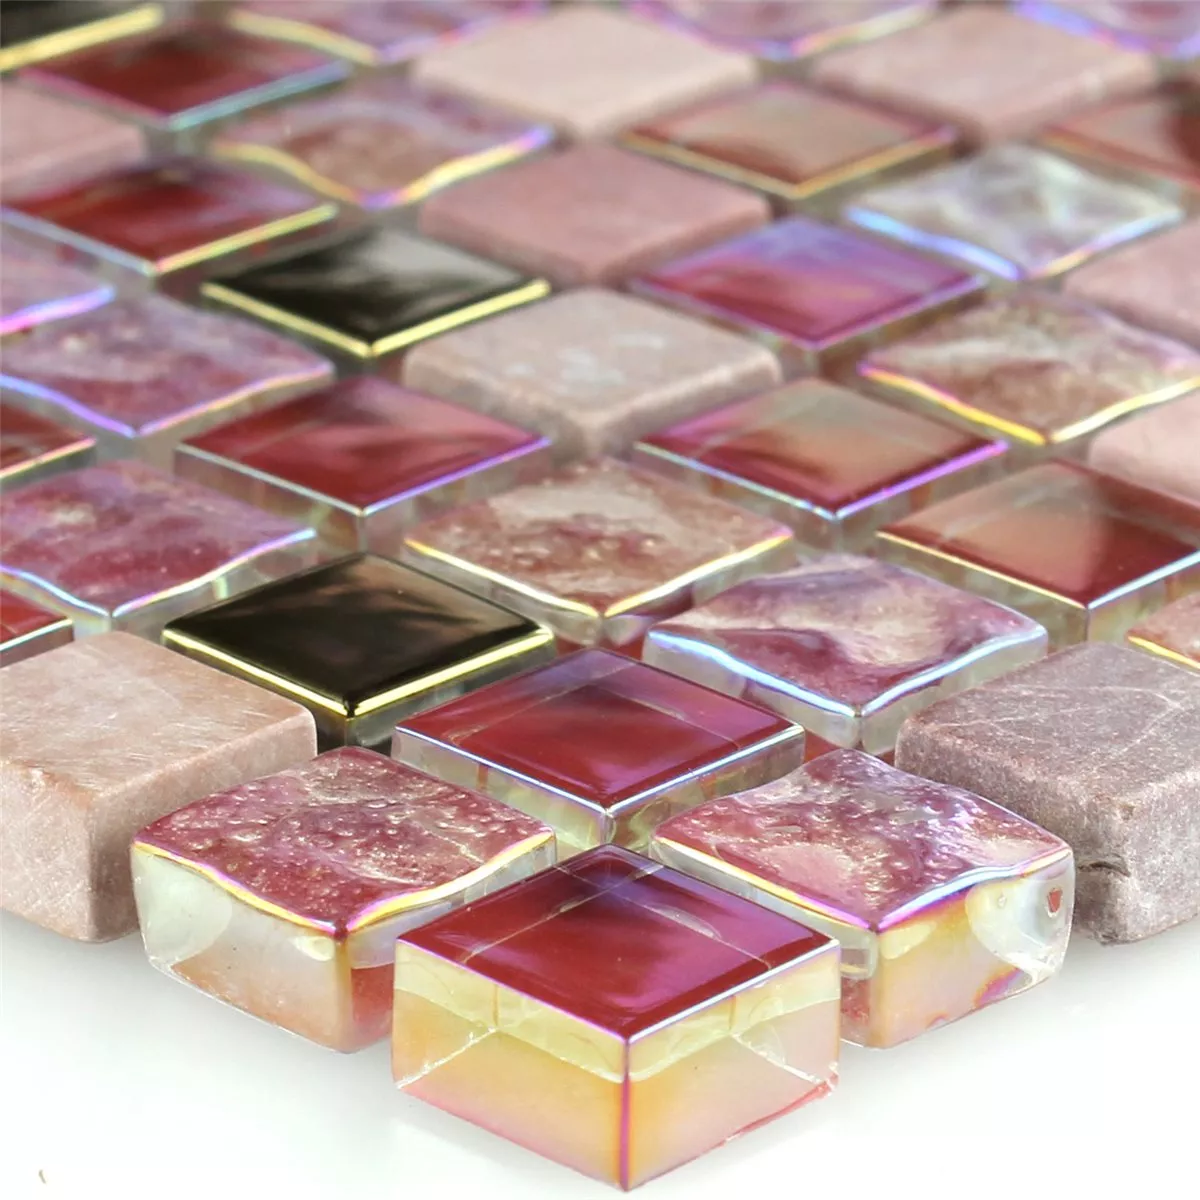 Mosaikfliesen Glas Naturstein Rot Rosa Gold